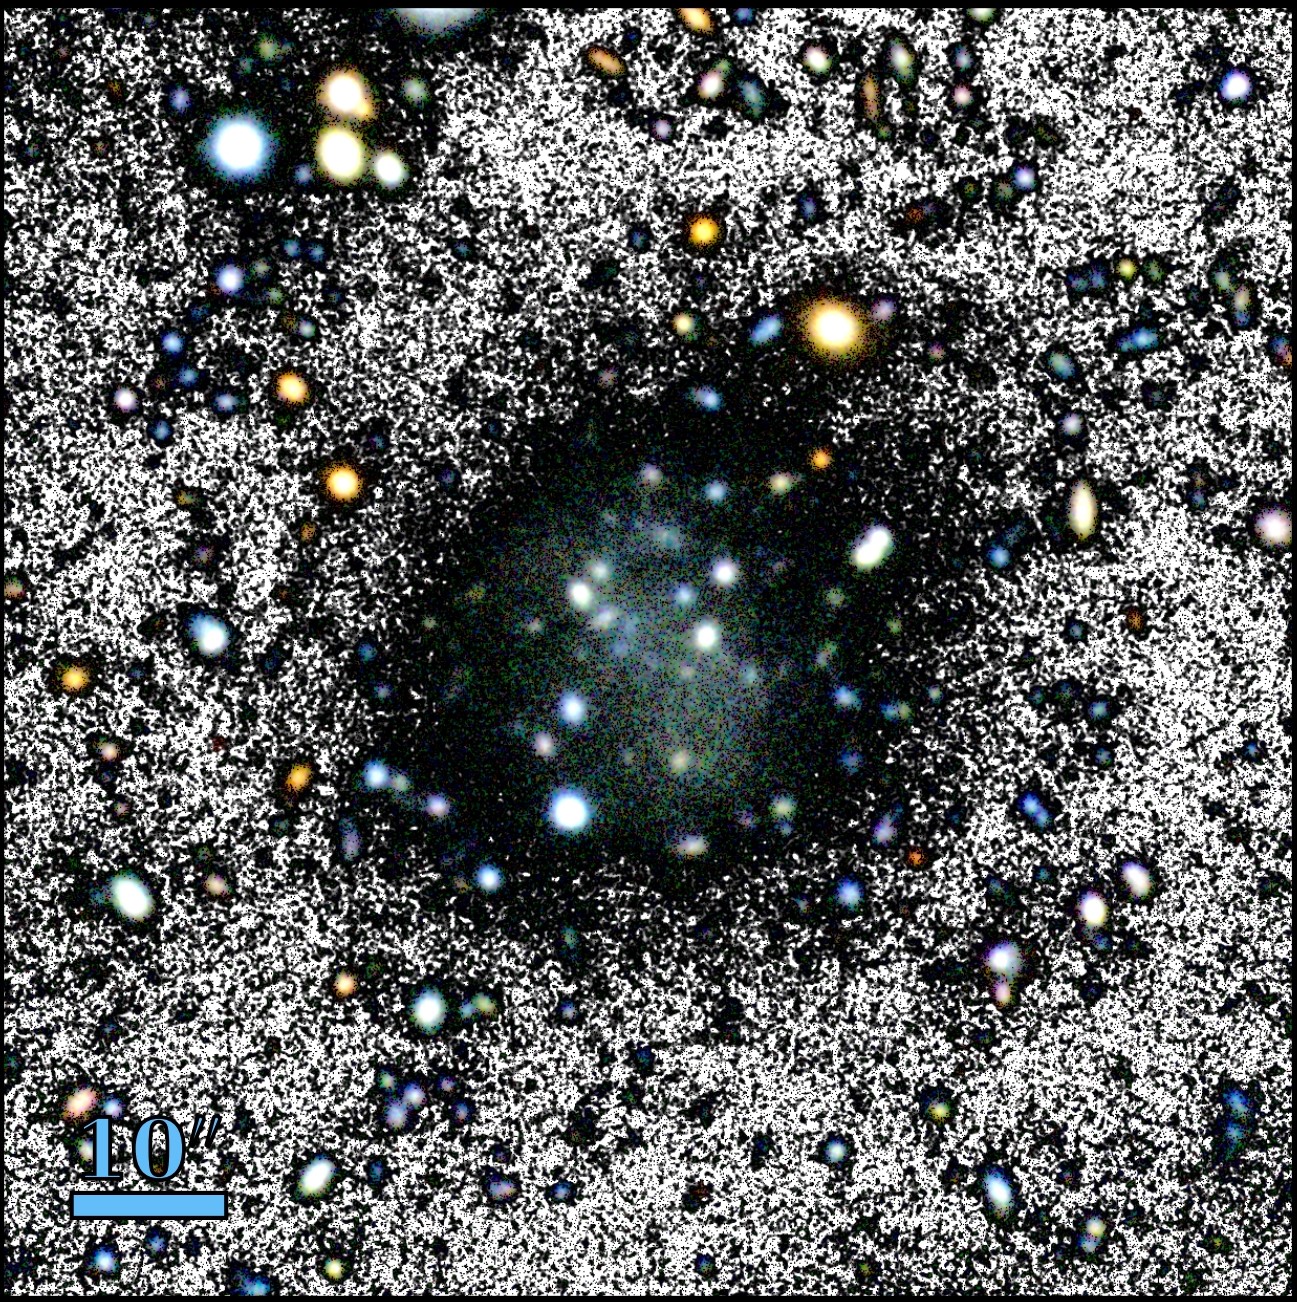 La galaxia Nube. La figura es una composición de una imagen en color y una imagen en blanco y negro para resaltar el fondo. Crédito: GTC, M. Montes